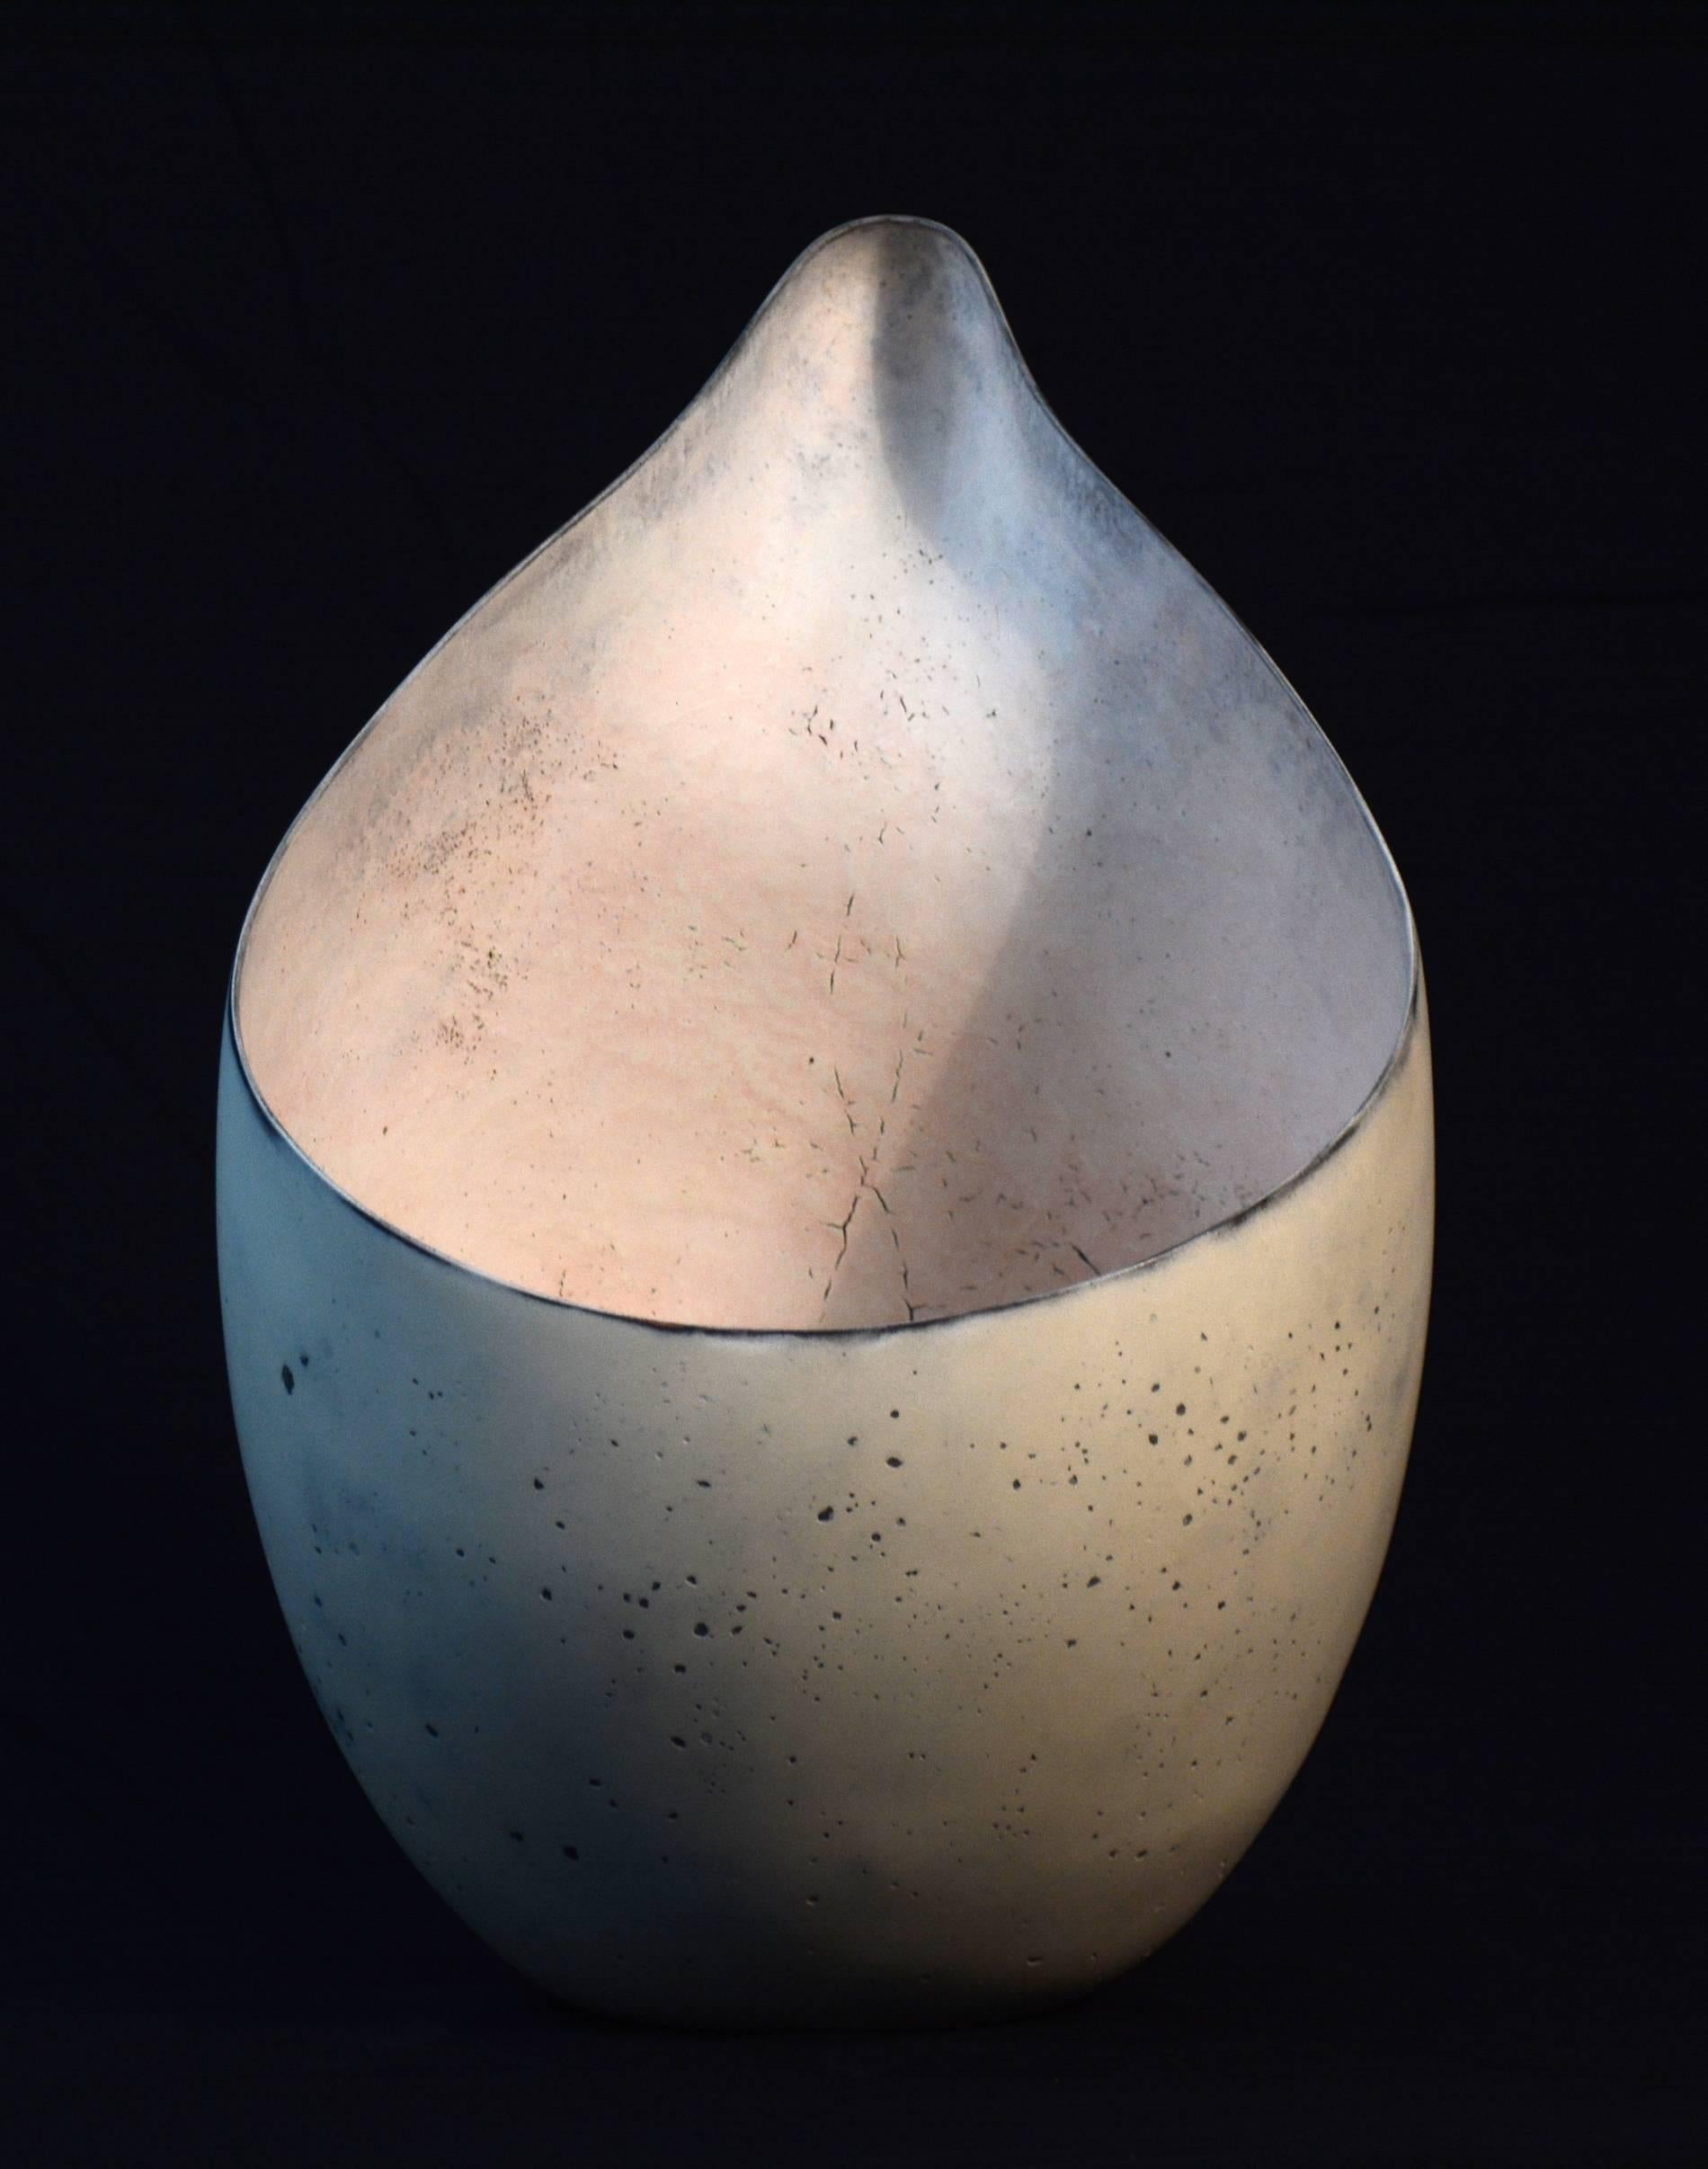 Dieses hervorragend gearbeitete tropfenförmige Gefäß ist ein Werk des kanadischen Keramikmeisters Steven Heinemann. Die cremeweiße Farbe dieses Stücks wird durch schwarze Details hervorgehoben, und die Form selbst wird durch die körnige Textur der